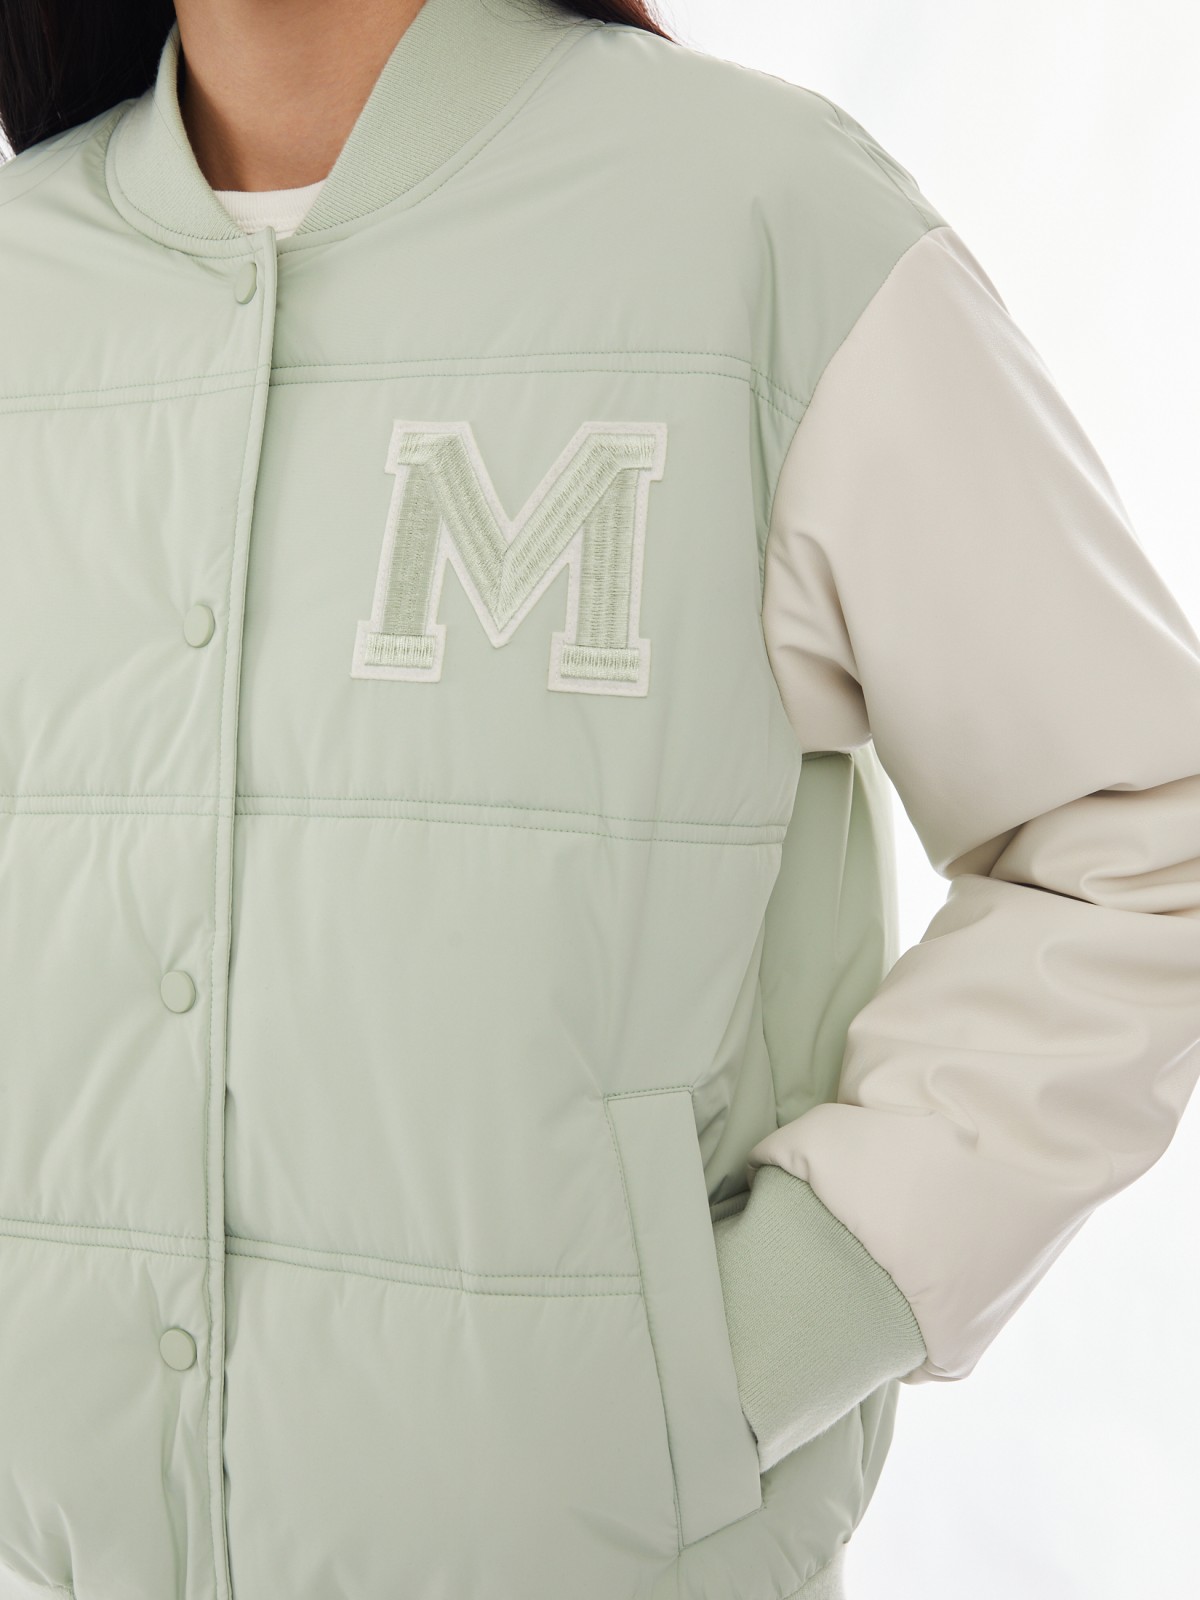 Тёплая куртка-бомбер из экокожи в стиле преппи zolla 024125112284, цвет светло-зеленый, размер XS - фото 4